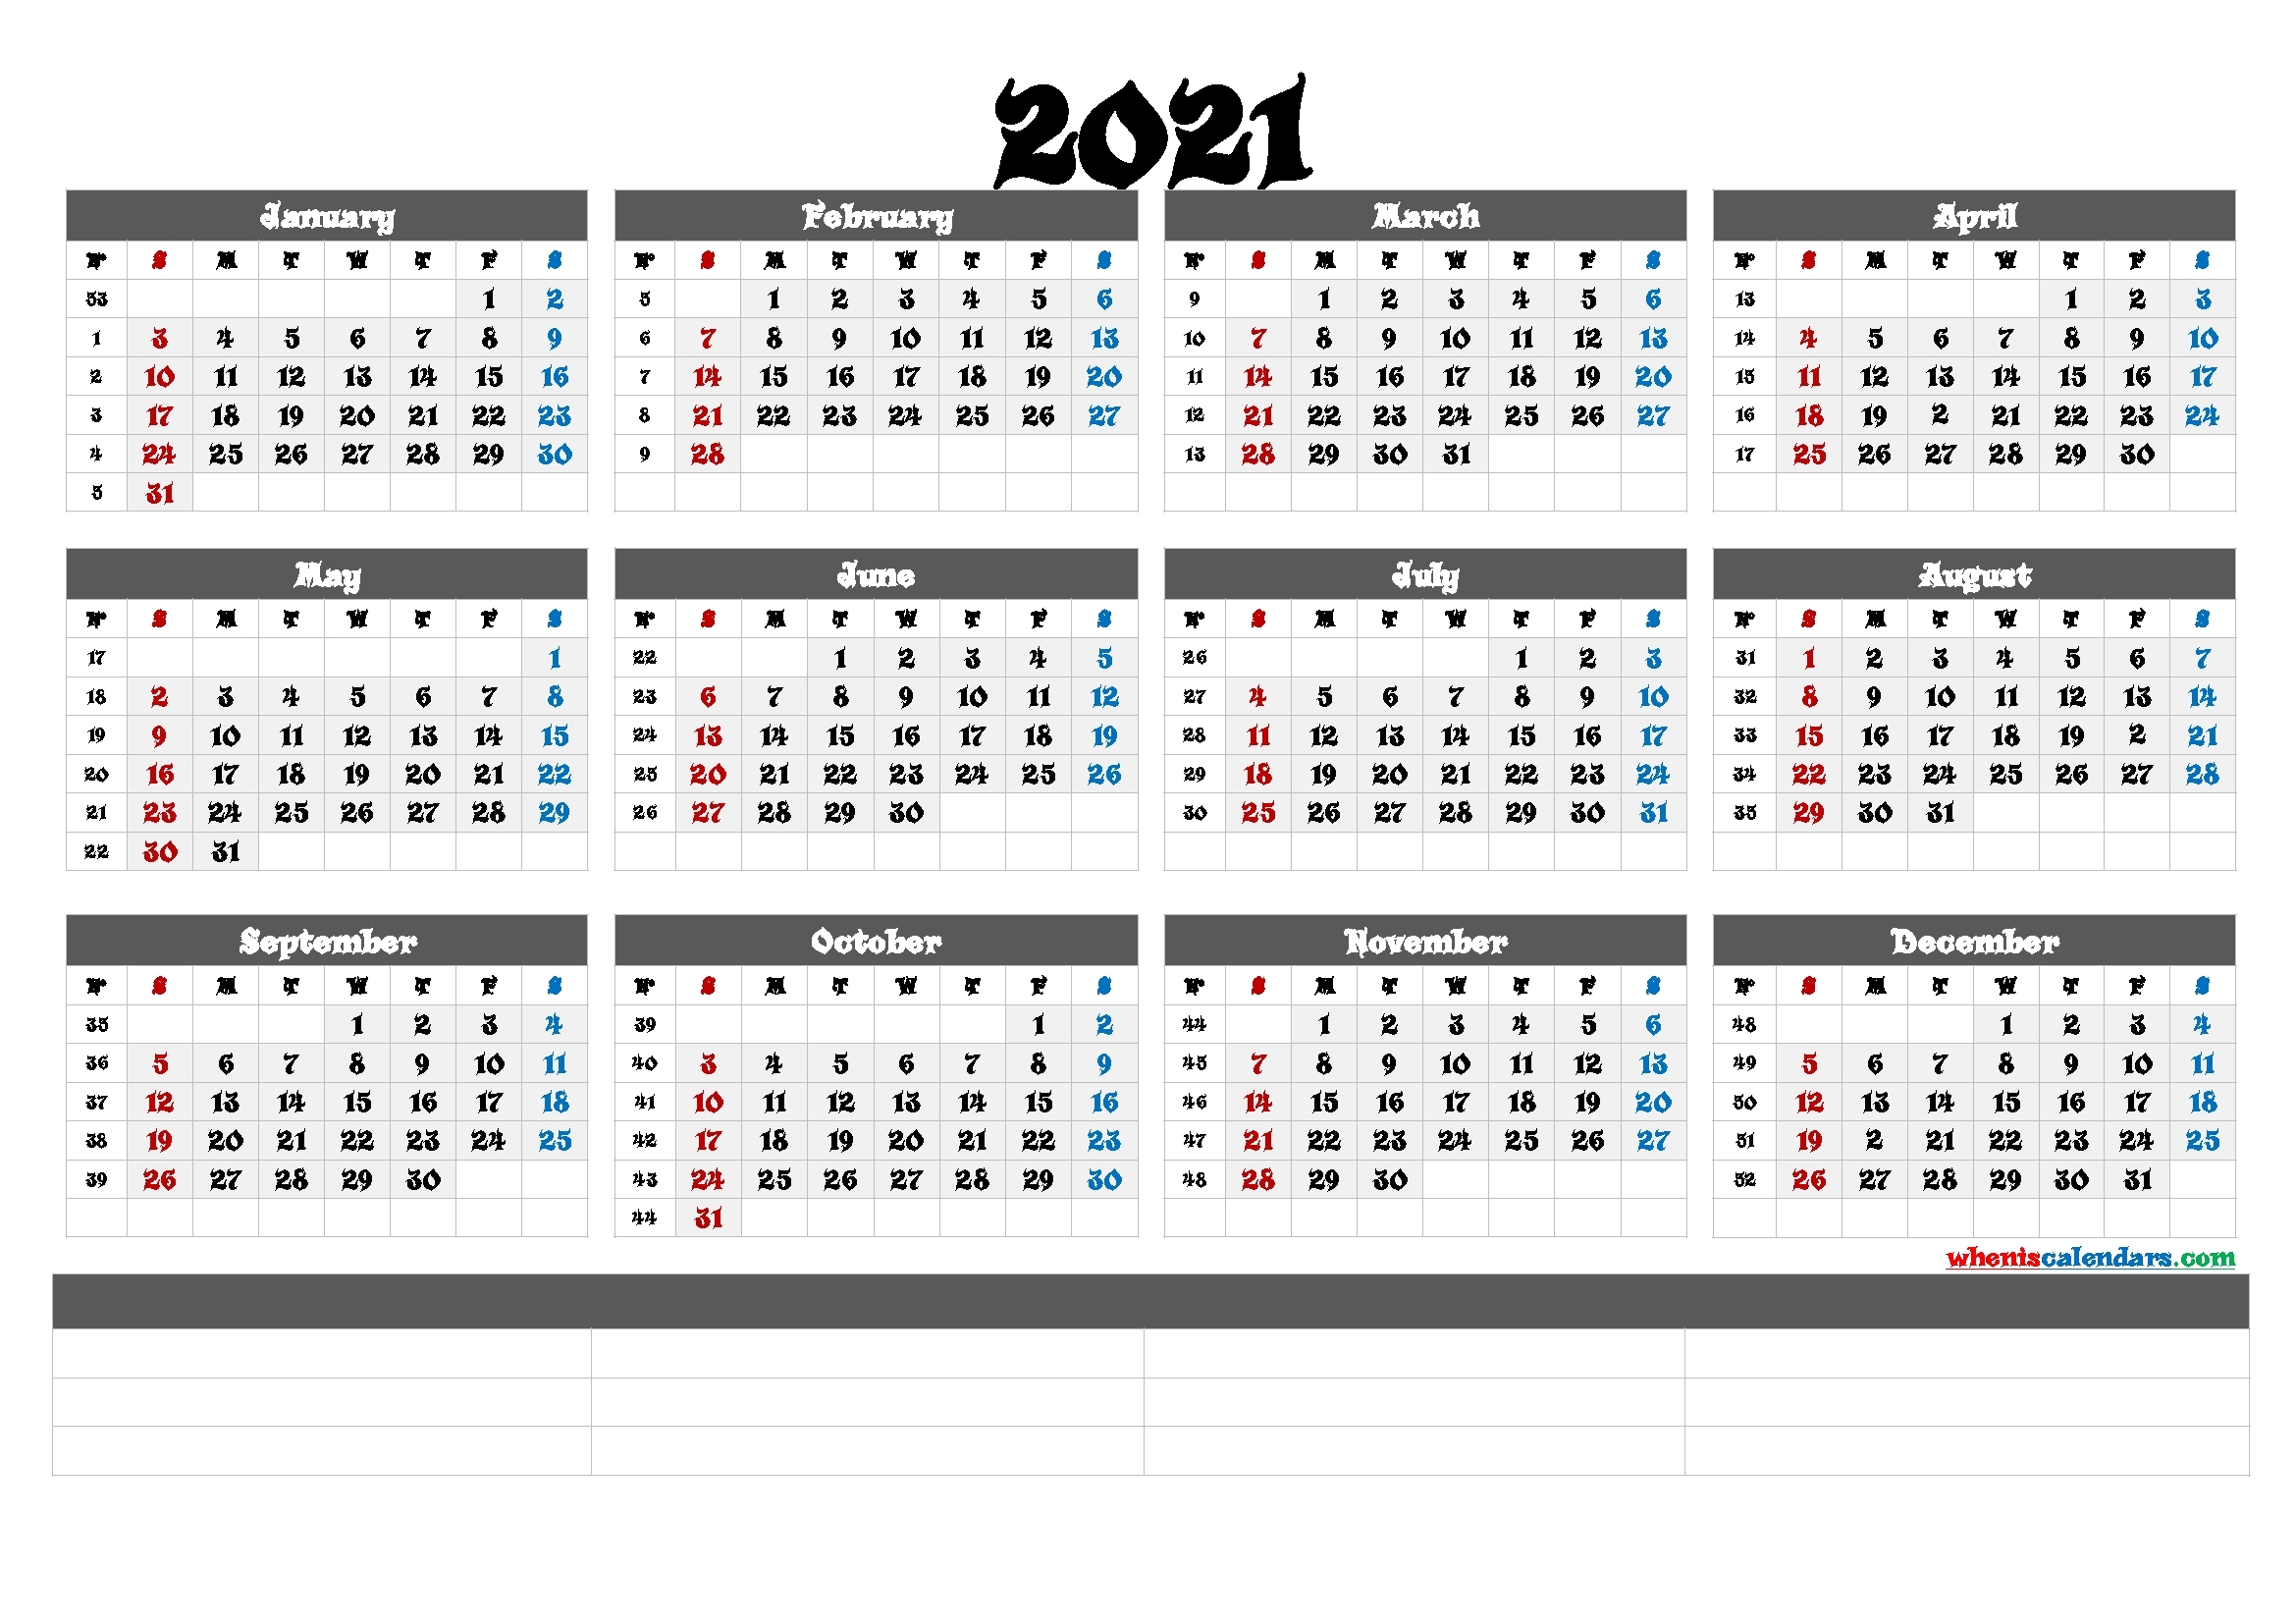 Get 2021 Calendar By Week